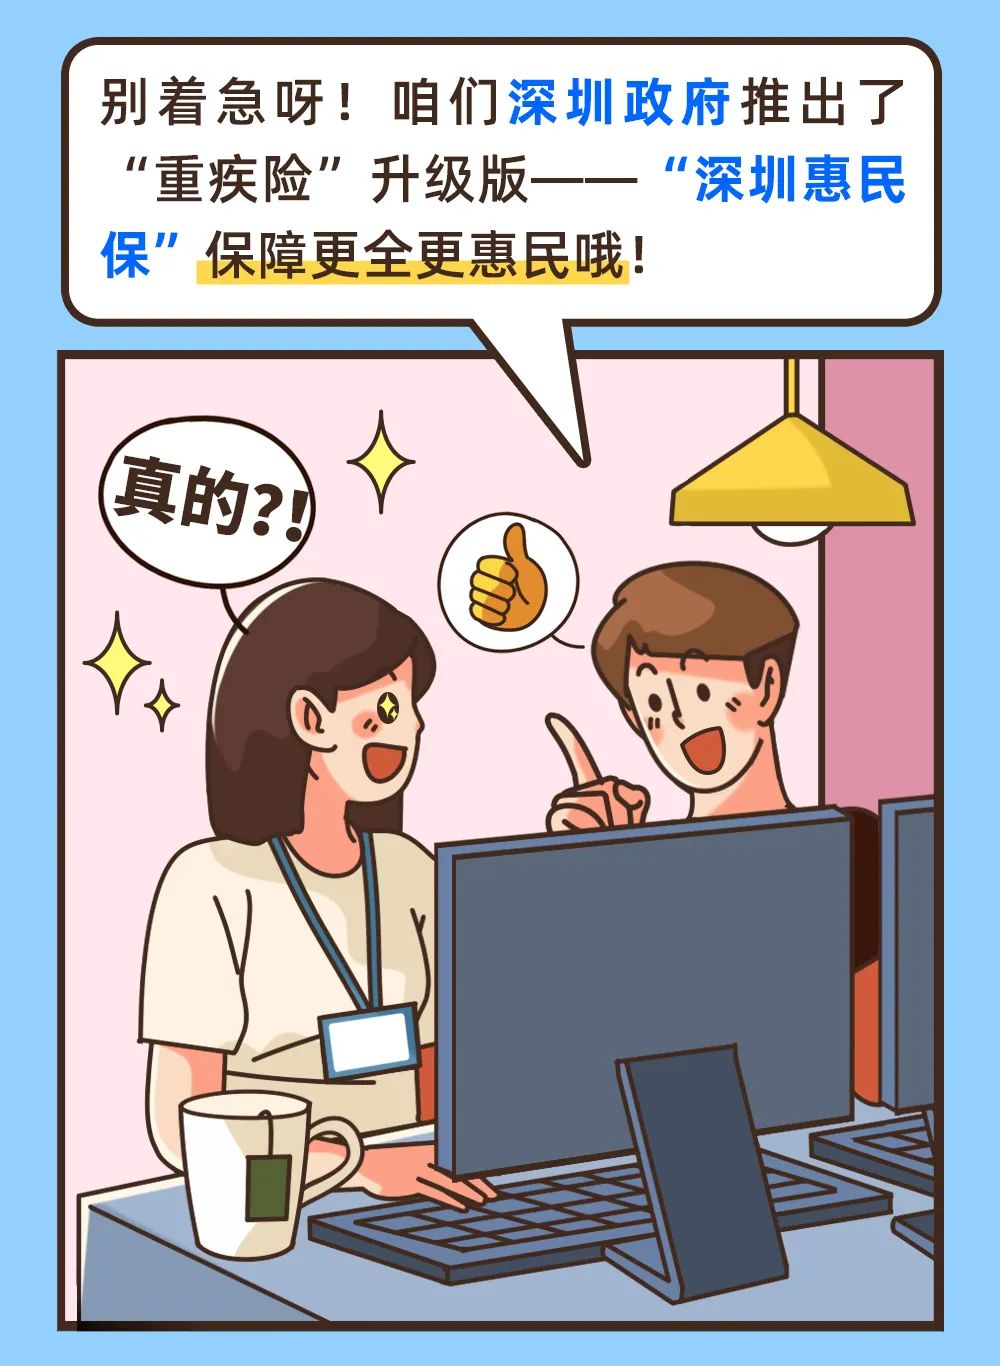  深圳惠民保今日上线，原重疾险升级 行业资讯